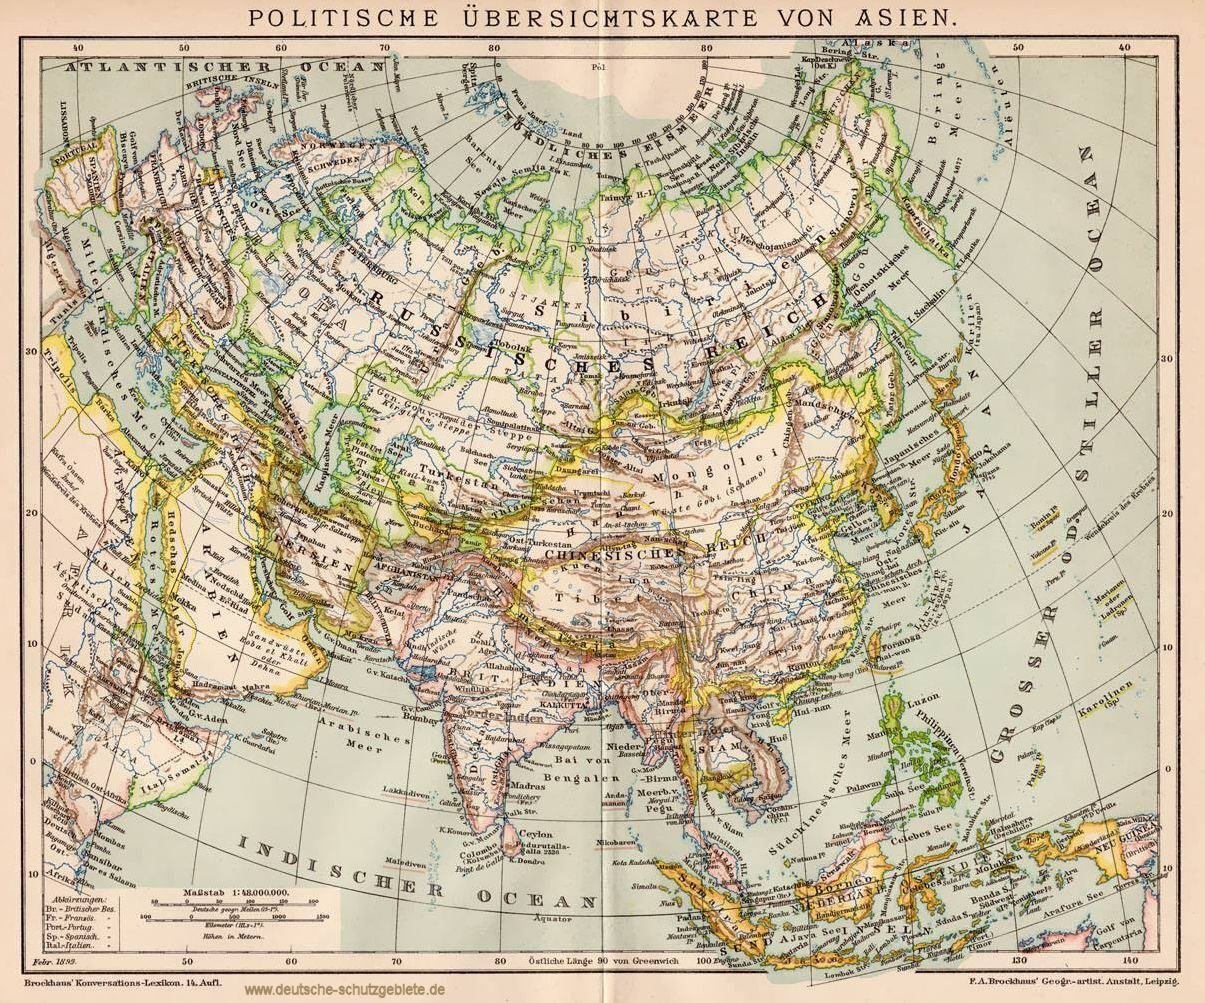 Politische Übersichtskarte von Asien (1892)